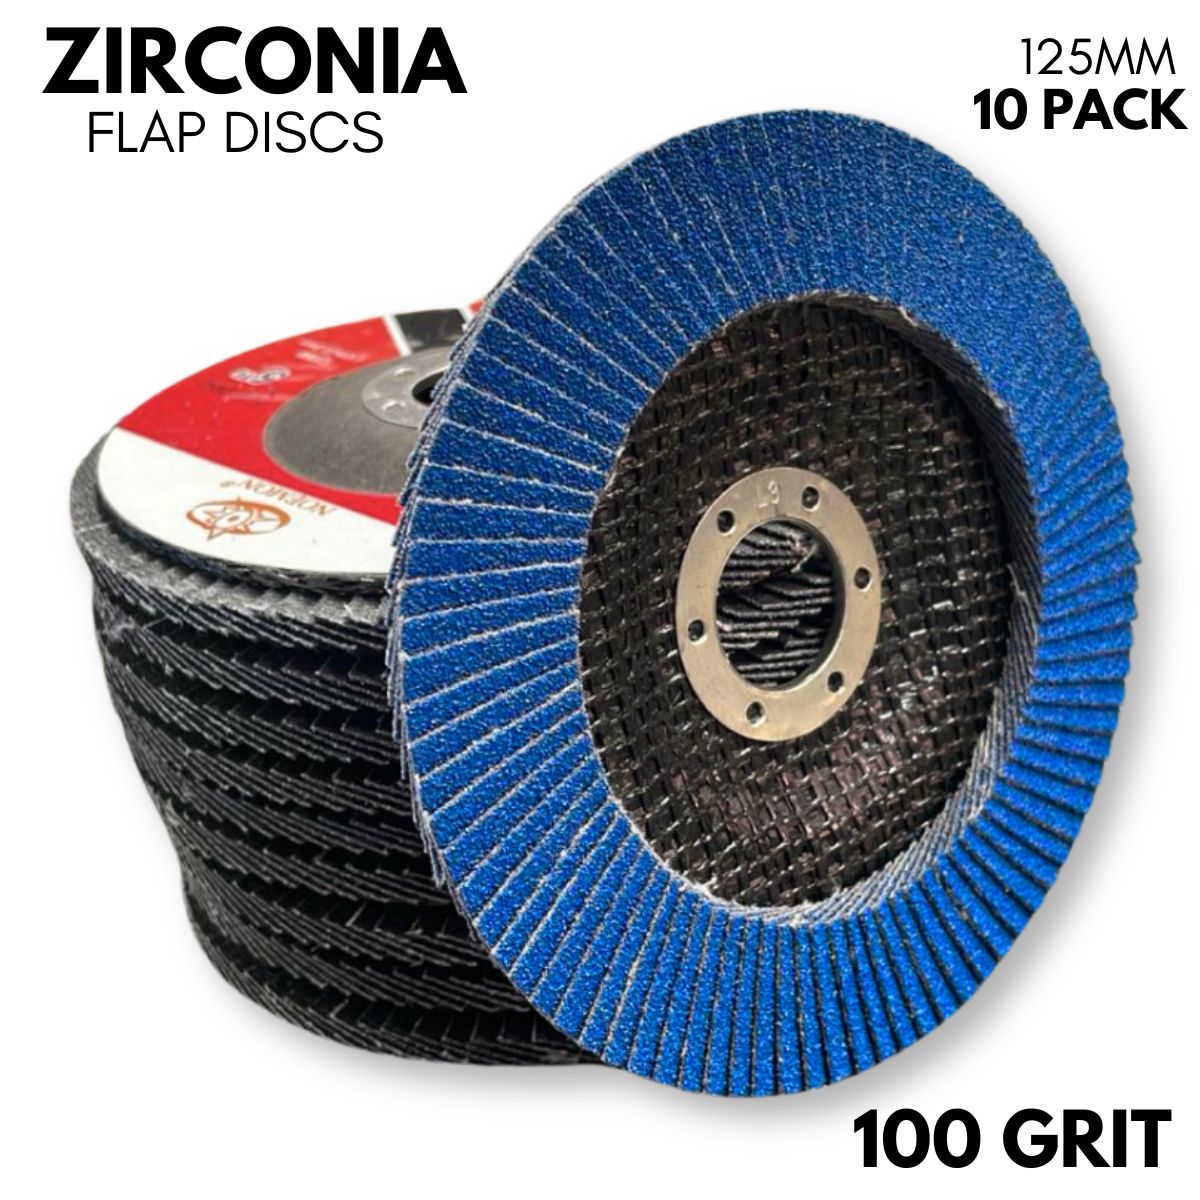 10 Pack | 125mm (5”) Flap Discs | 100 GRIT Zirconia